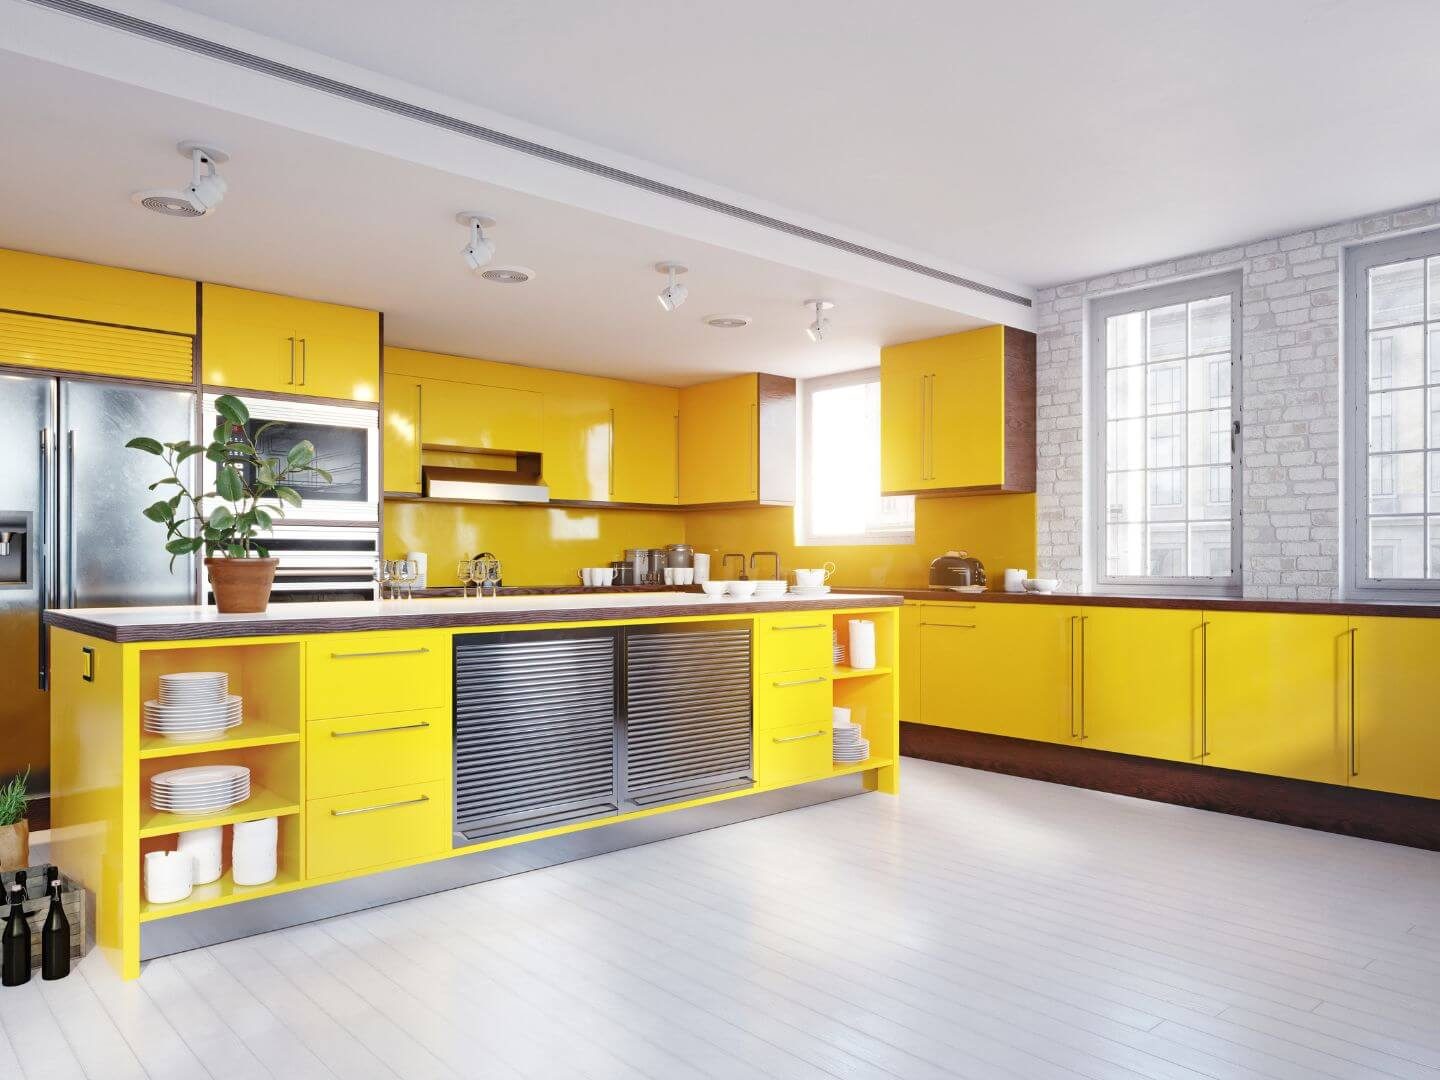 interior design kitchen trends 2023